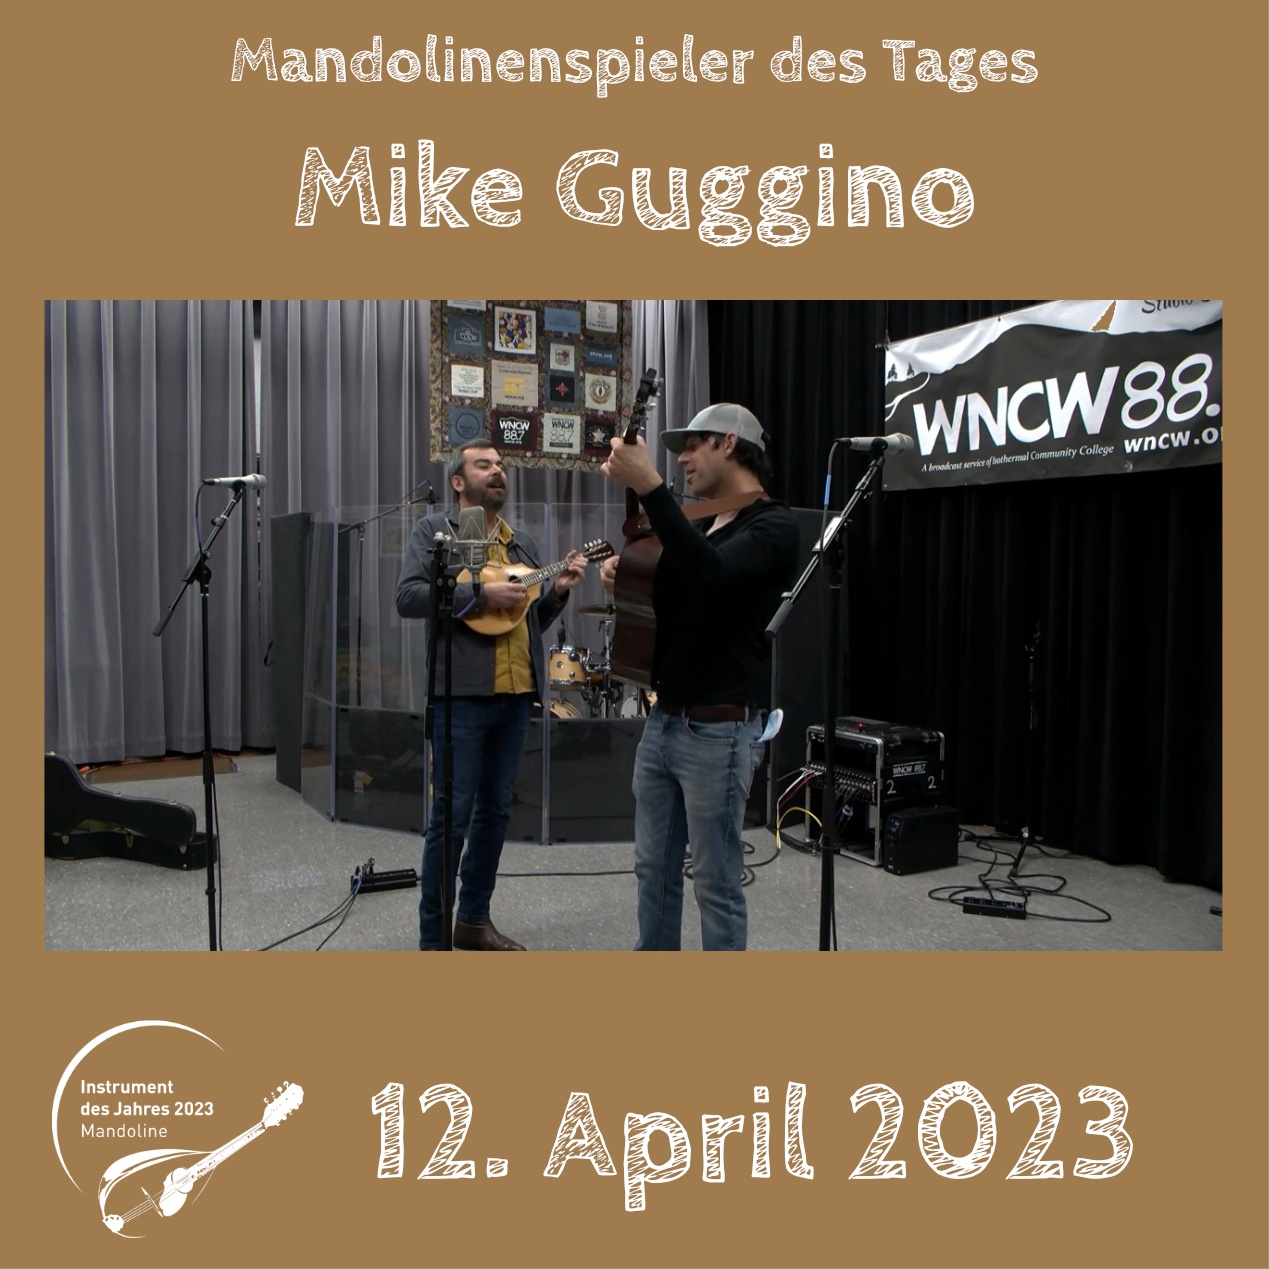 Mike Guggino Instrument des Jahres 2023 Mandolinenspieler Mandolinenspielerin des Tages